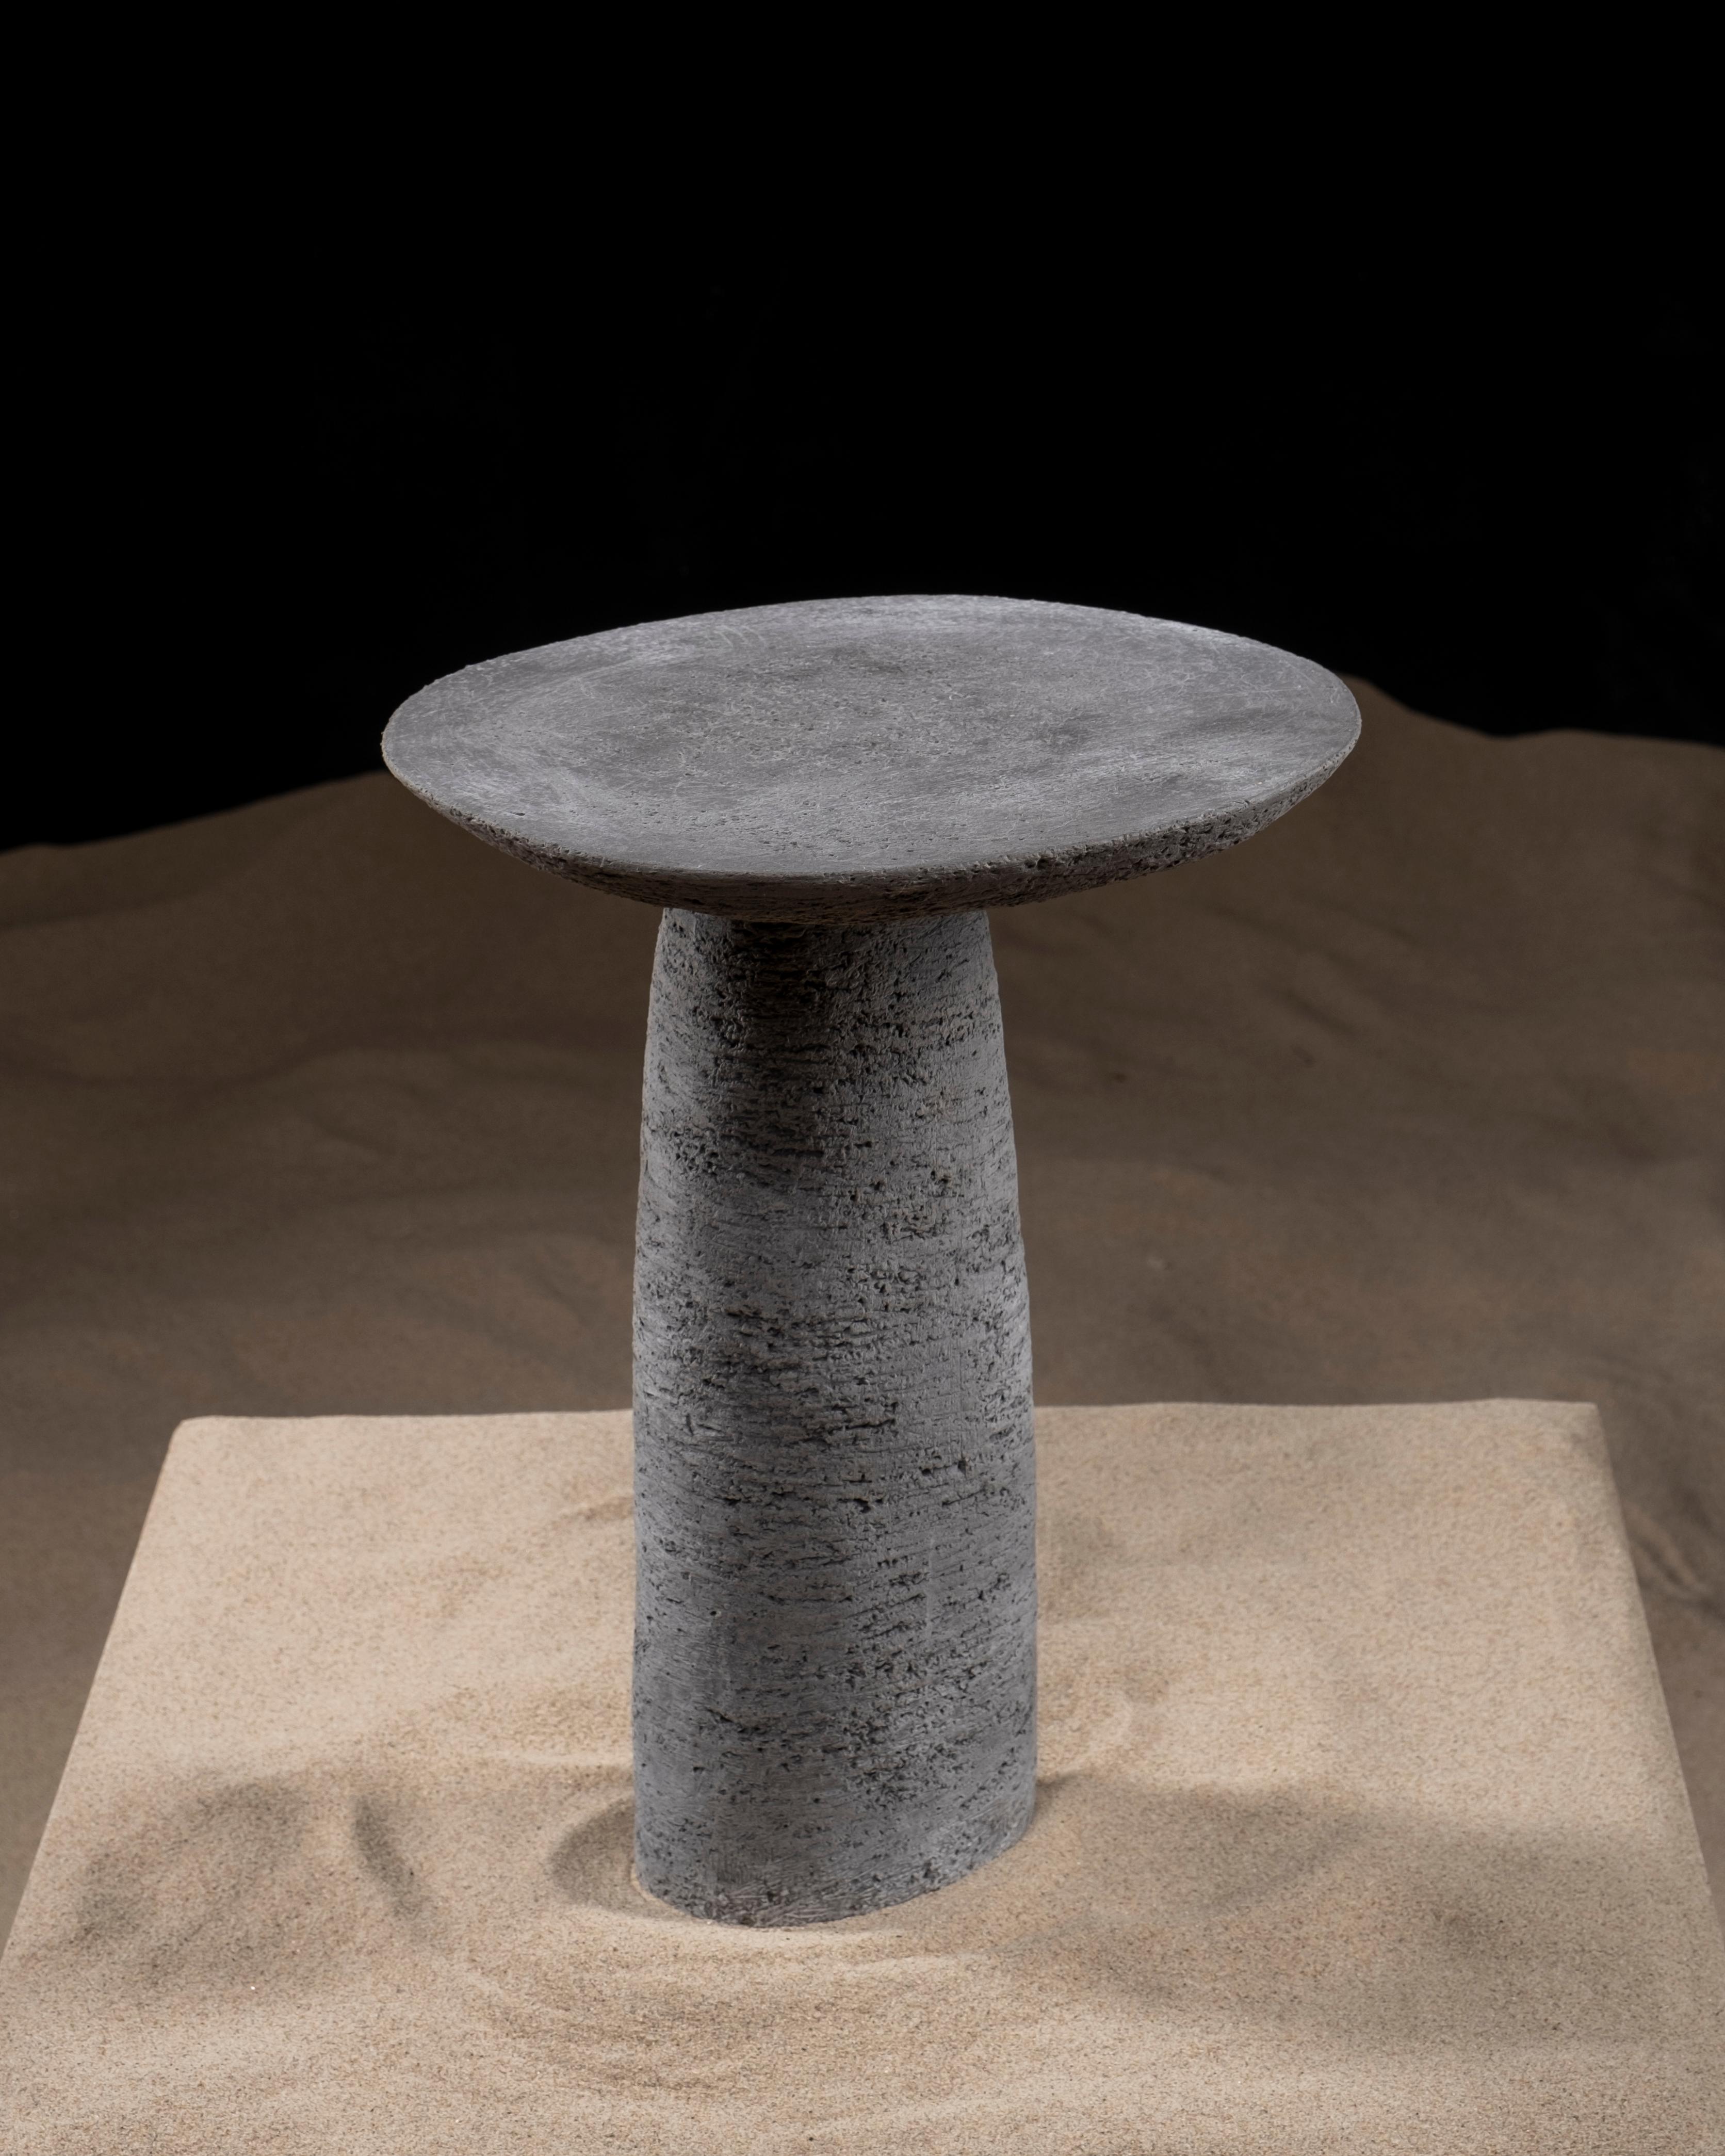 La table d'appoint Orbitae est une pièce de mobilier sculpturale en céramique. Le designer s'est inspiré de l'orbite et de la trajectoire des vagues, cherchant une forme physique et visant à saisir un moment du cycle en créant Orbitae. Il est fait